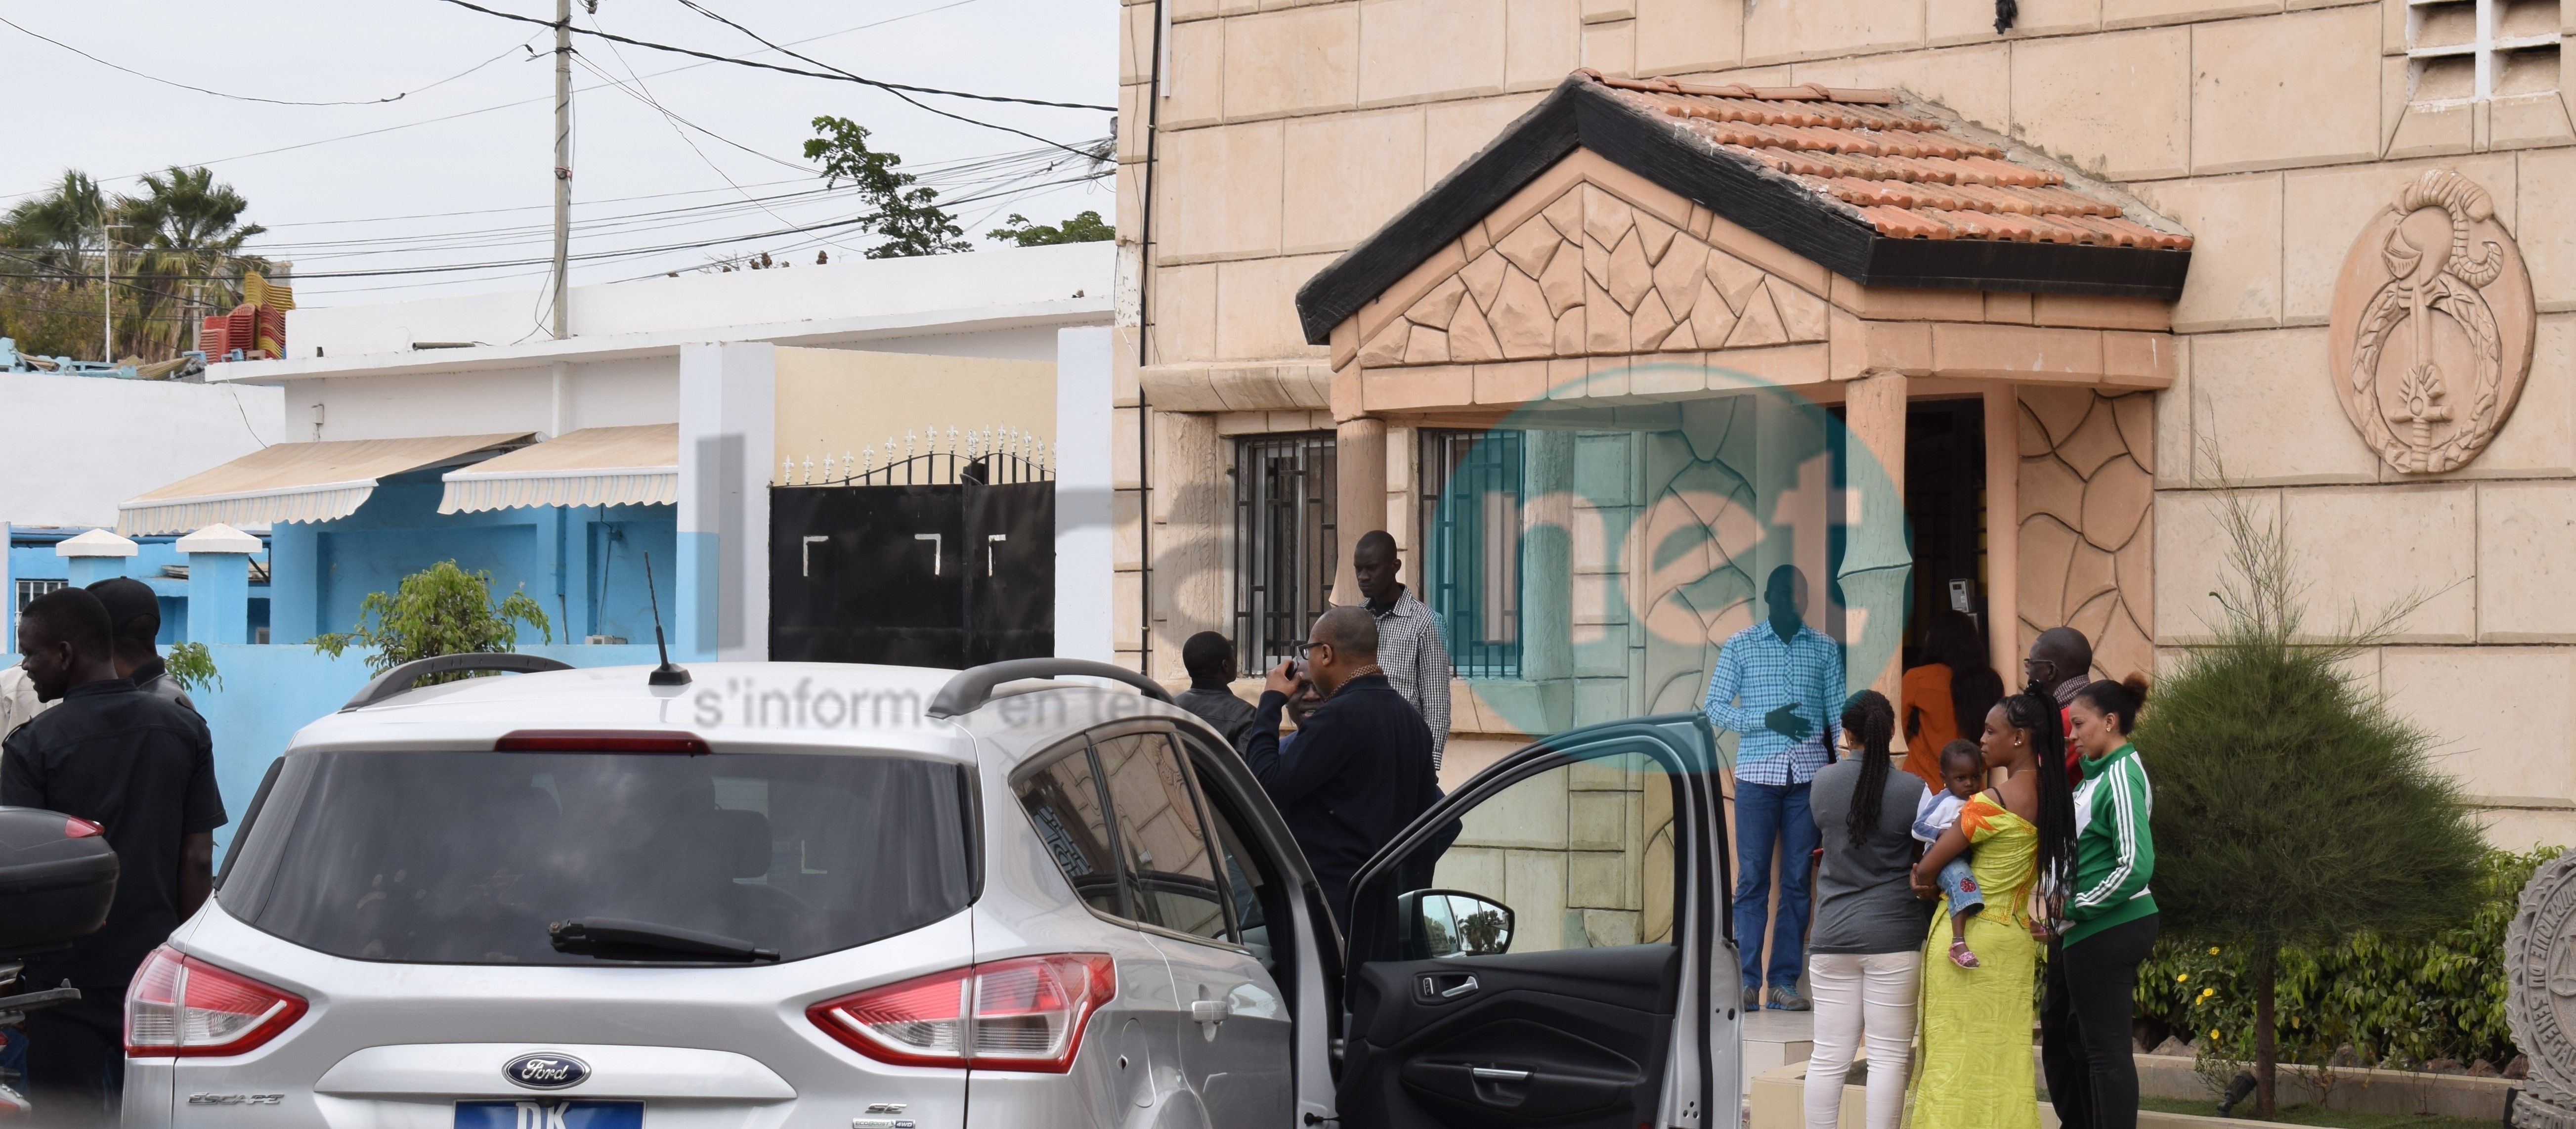 Les images de El Hadji Ousseynou Diouf à sa sortie d'audition de la Section de recherches de la gendarmerie